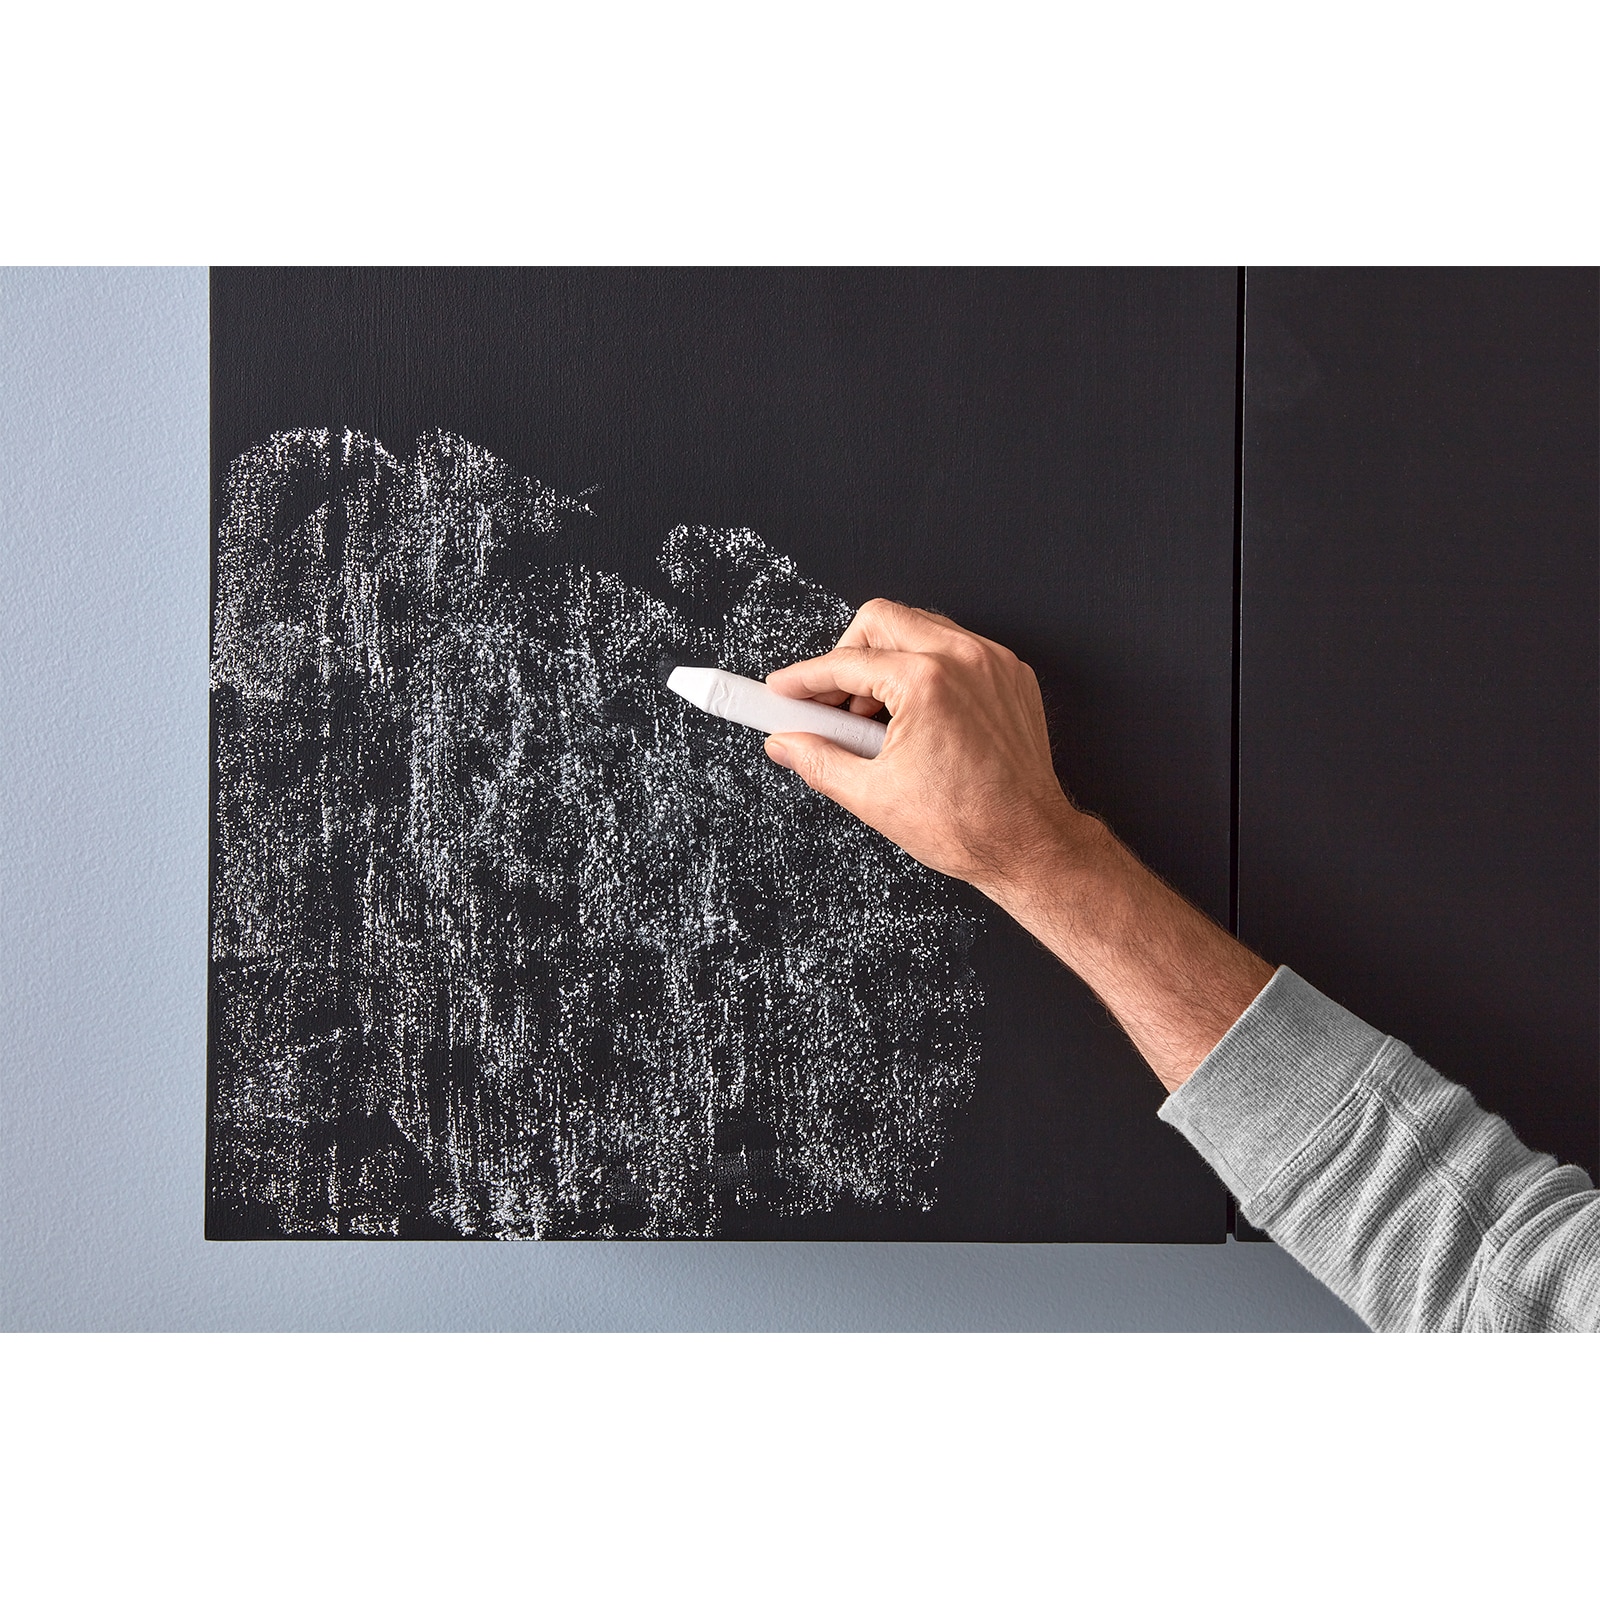 Chalkboard Paint 4m² - Black